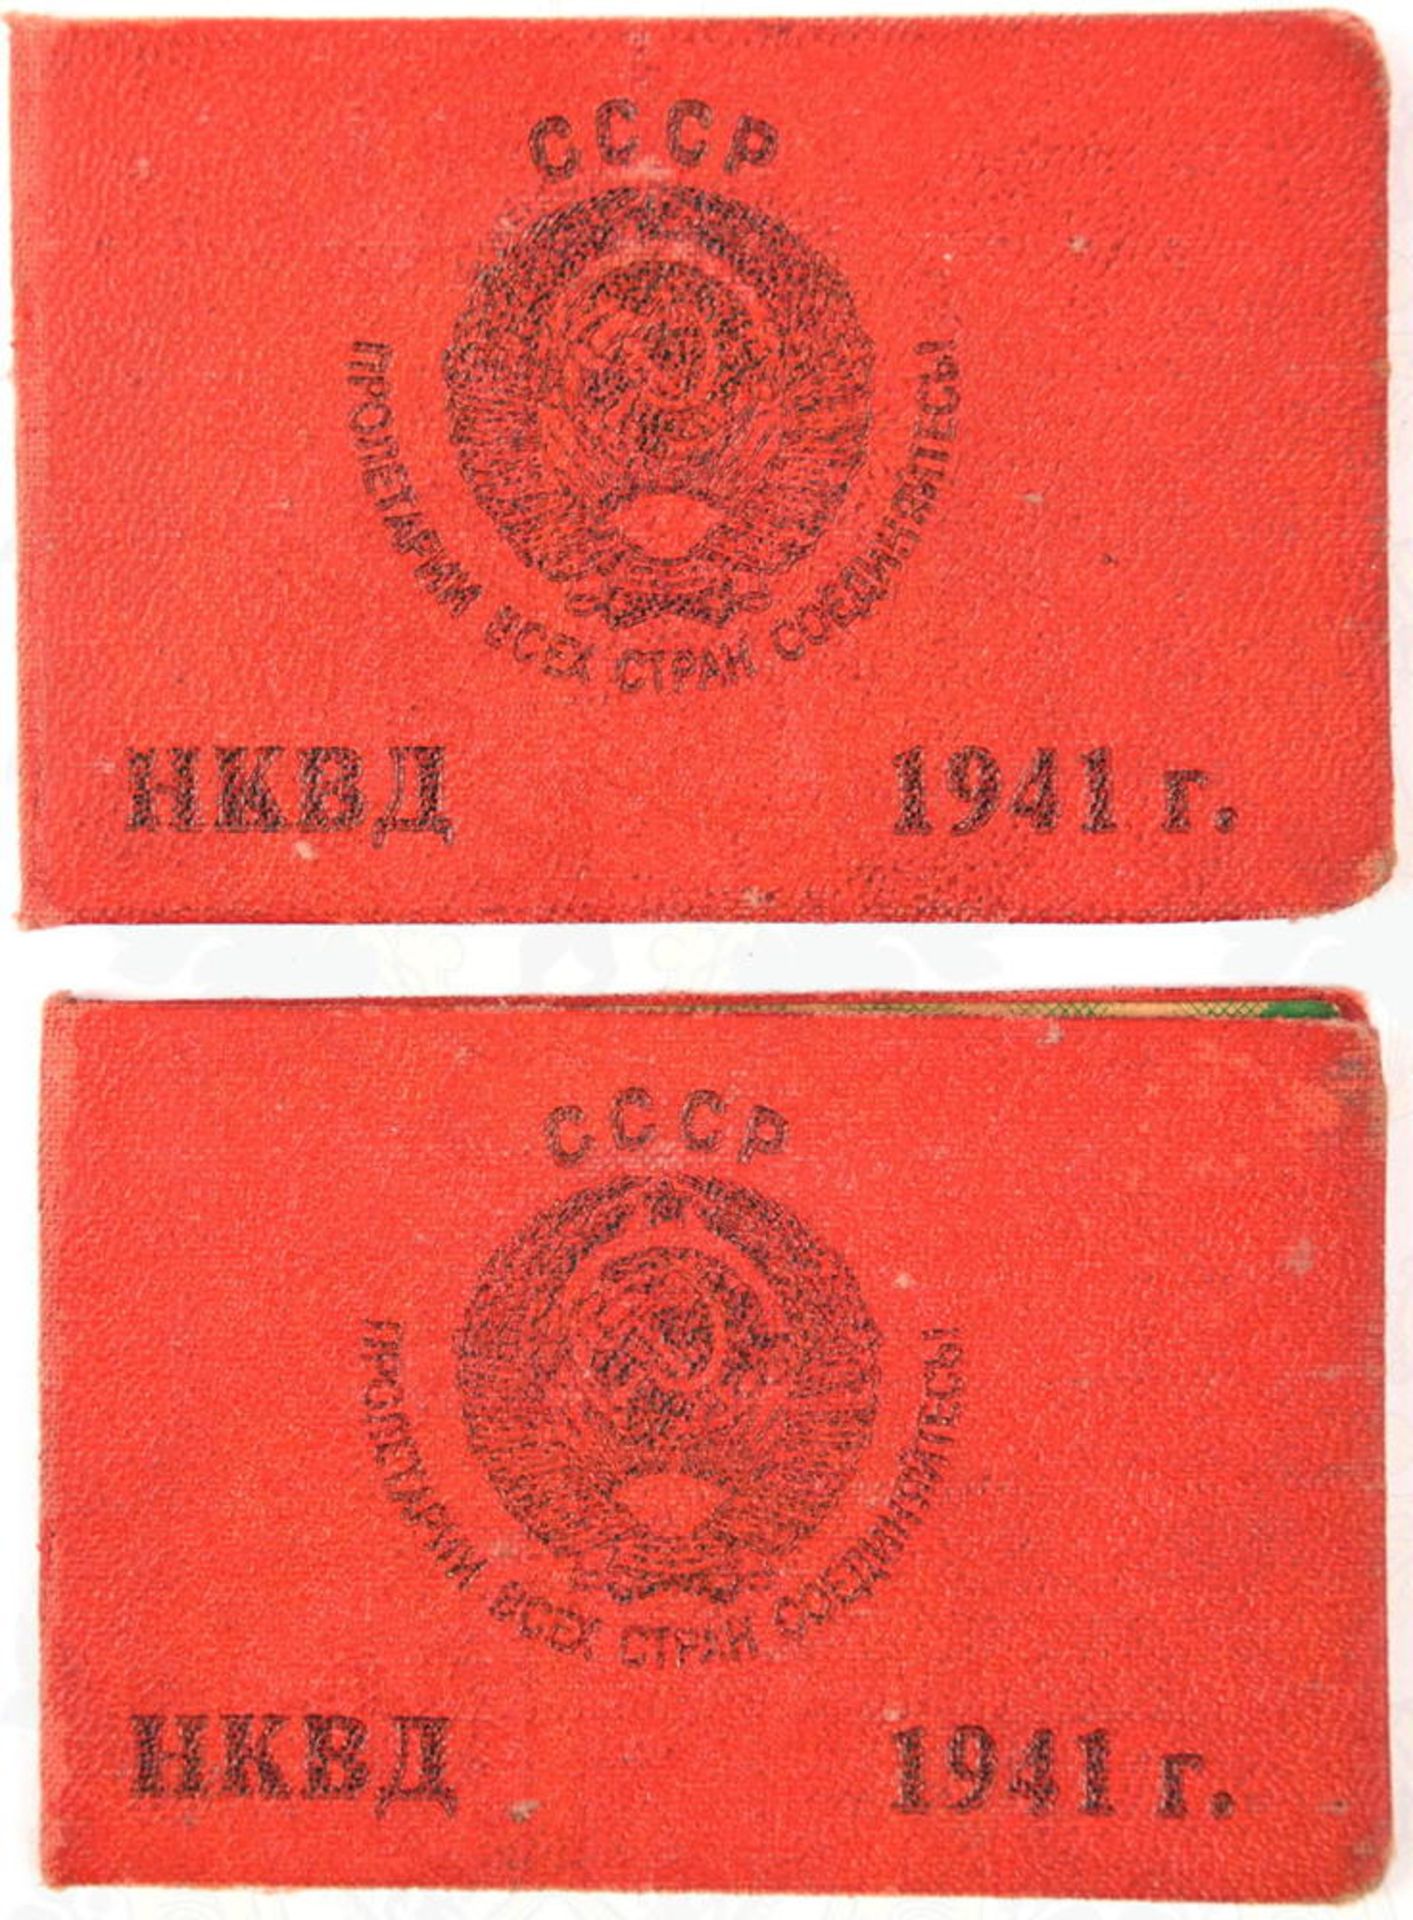 2 DIENSTAUSWEISE BEWAFFNETE STREITKRÄFTE DES NKWD, für 2 verschiedene Funktionäre des NKWD, 1941, Au